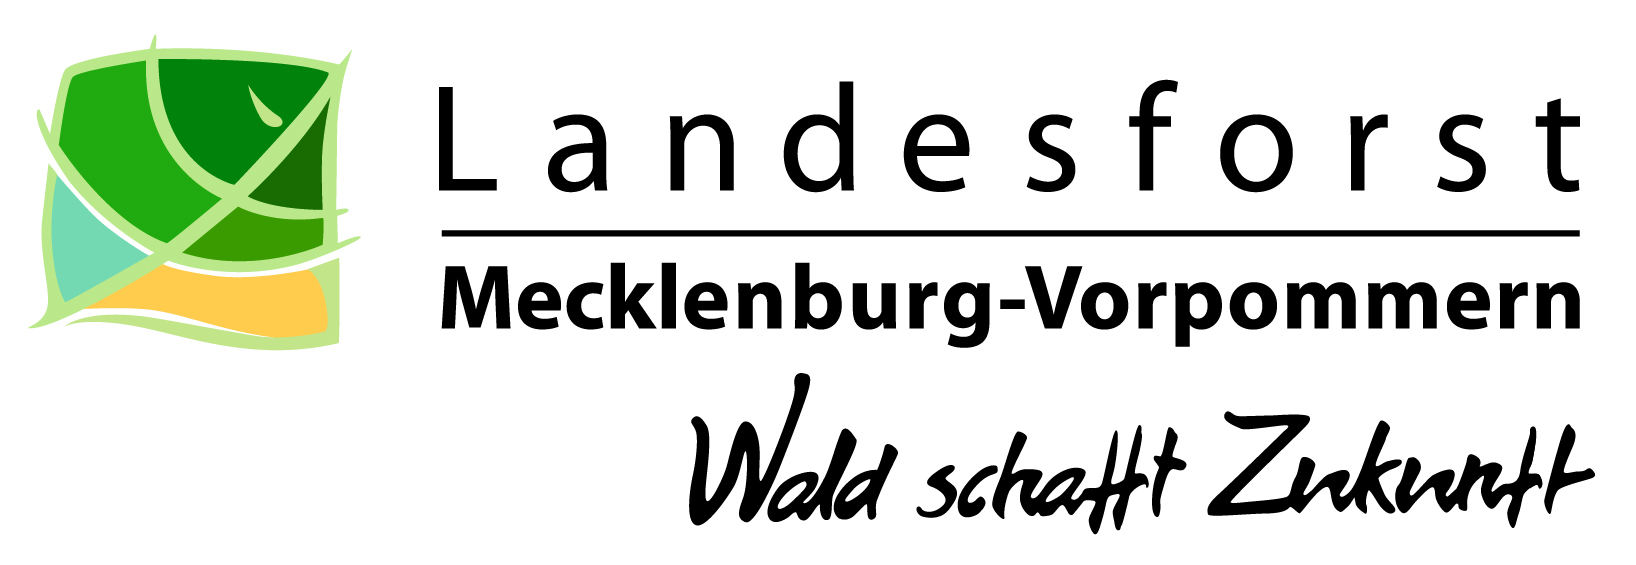 Logo Landesforst Mecklenburg